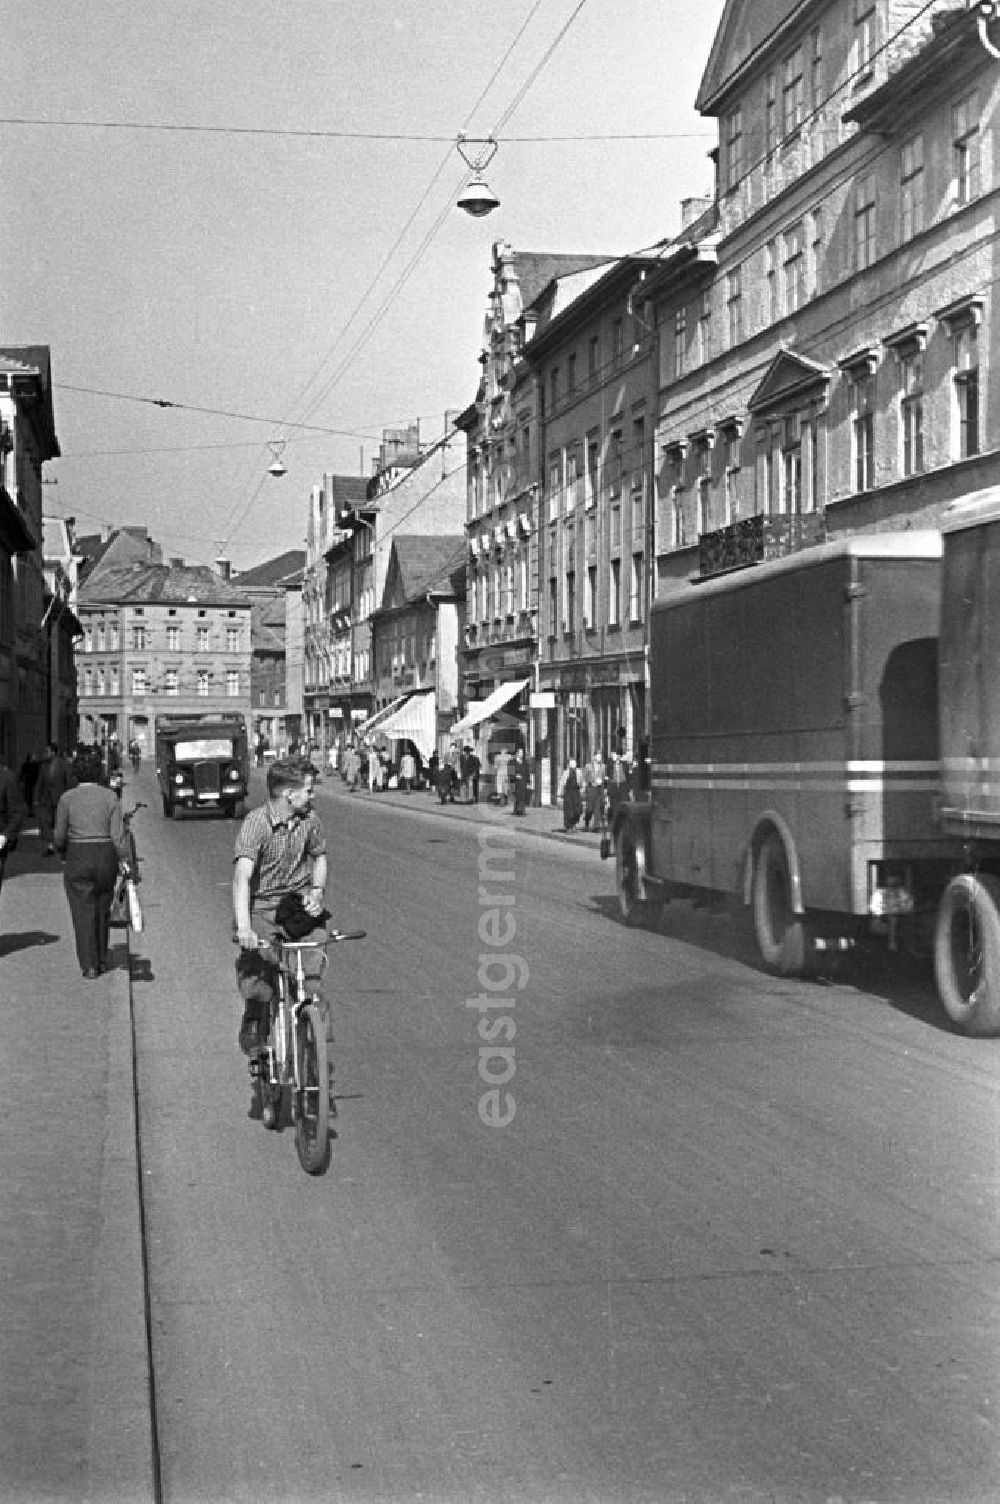 GDR image archive: Weimar - Alltagsszene in Weimar. Ein Junge fährt auf seinem Fahrrad auf einer Straße durch Weimar.